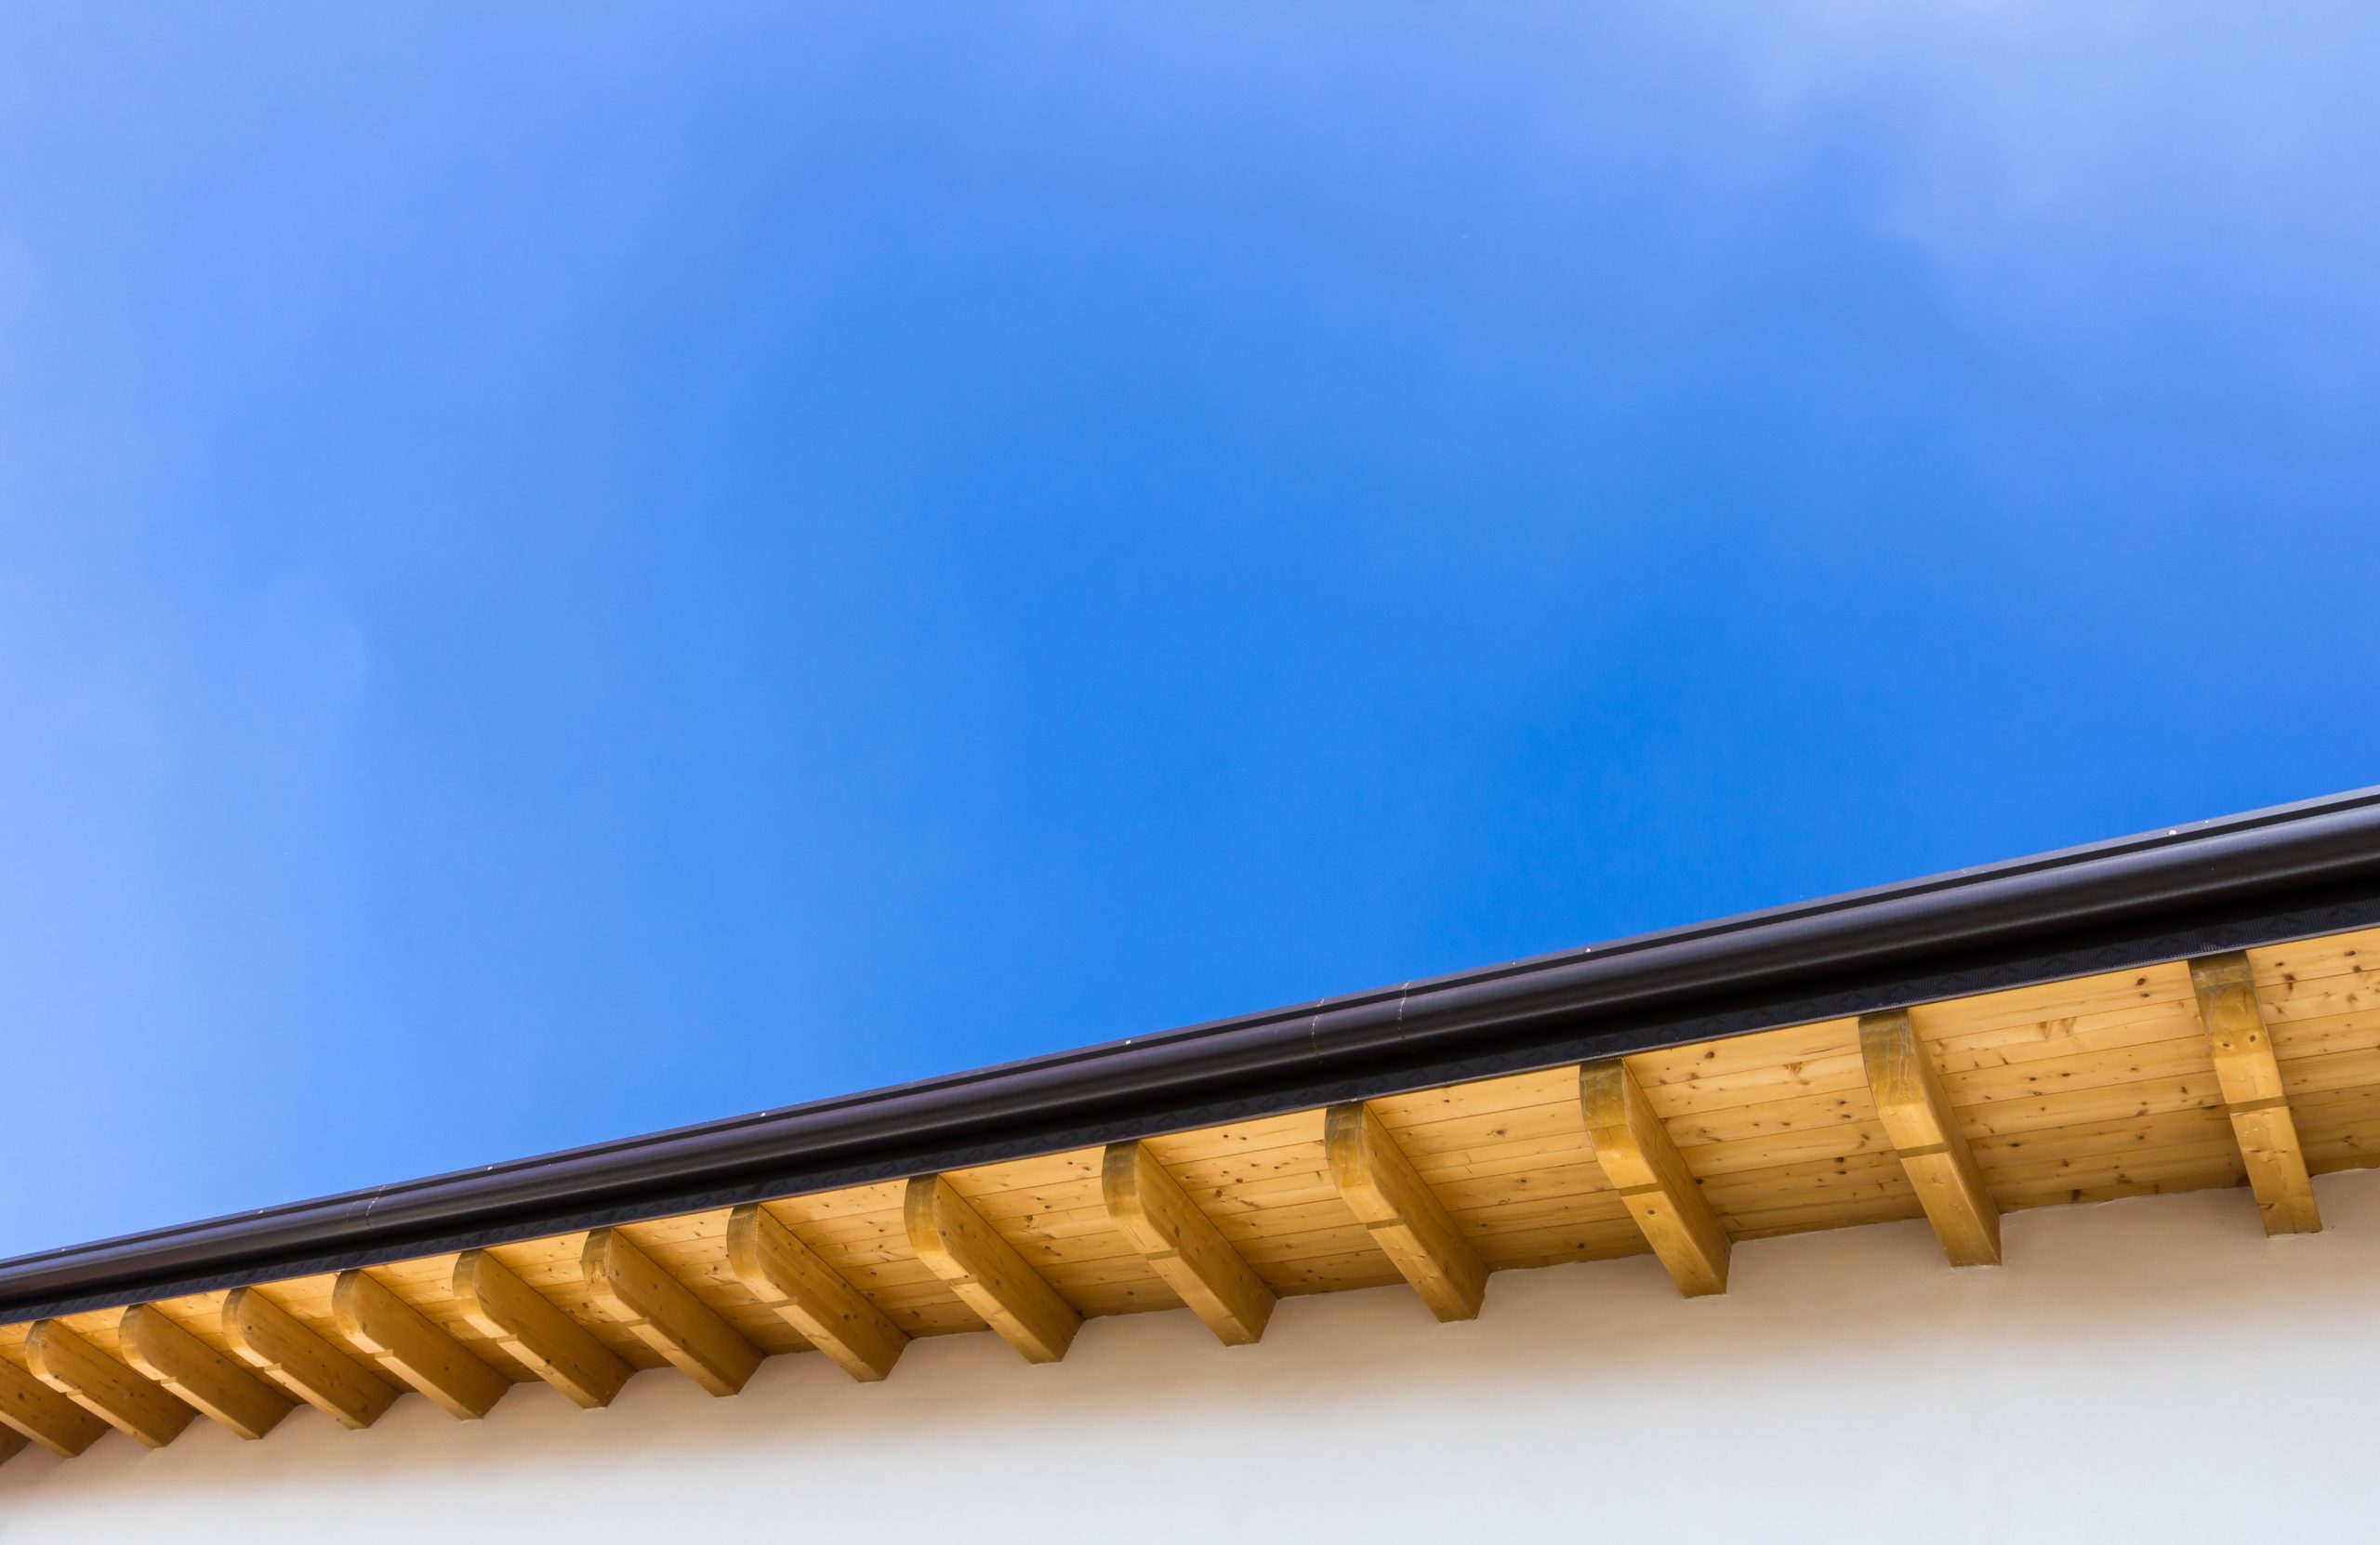 Underside of gutters against a blue sky